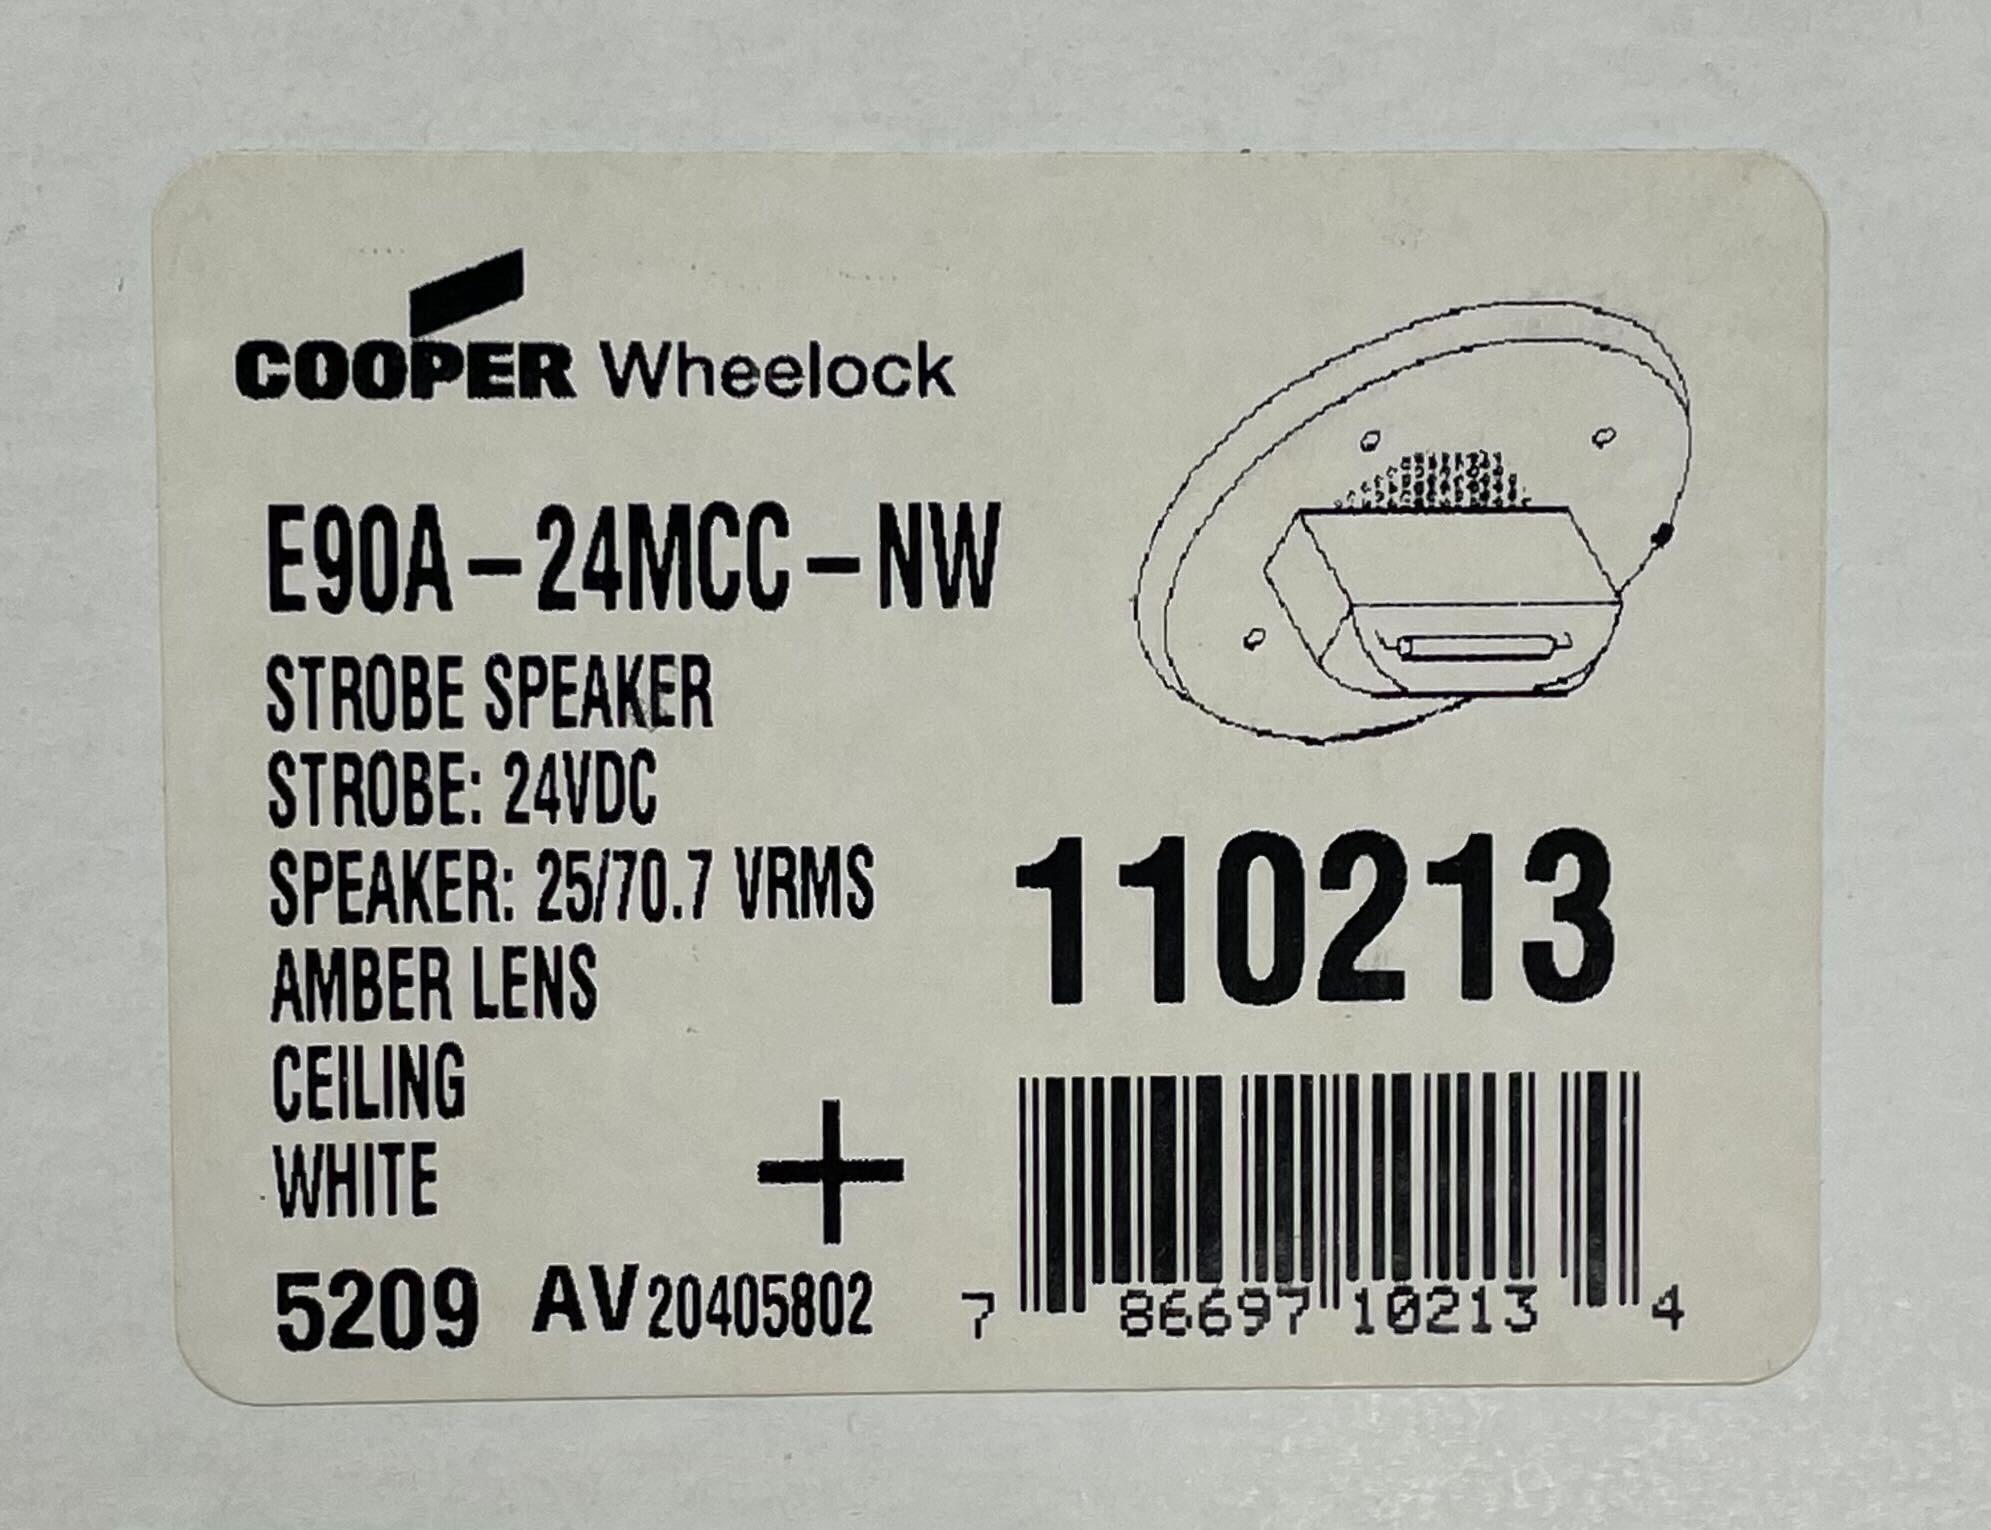 Wheelock E90A-24MCC-NW - The Fire Alarm Supplier